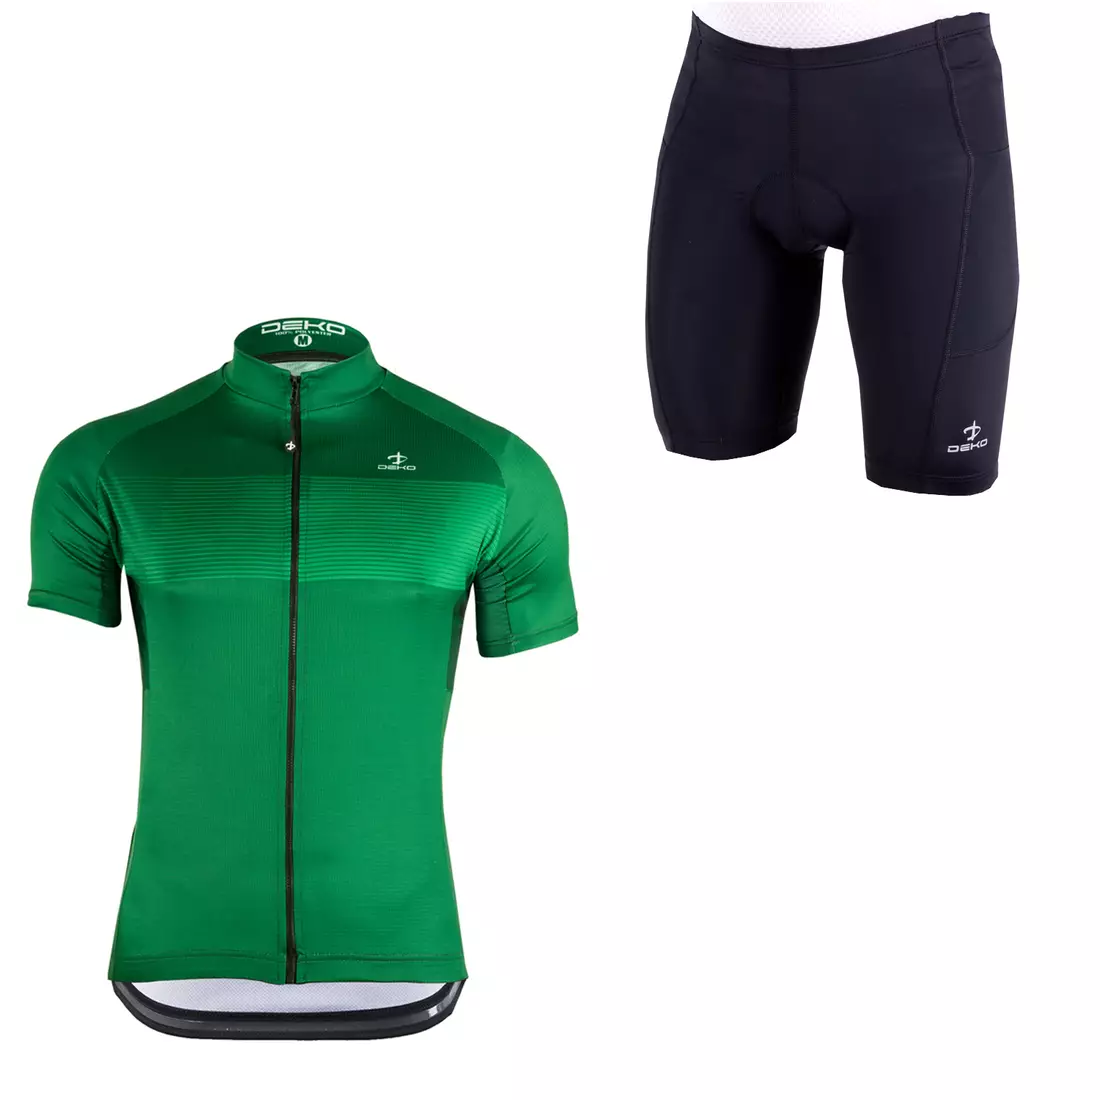 [Set] DEKO STYLE-0421 pánsky cyklistický dres s krátkym rukávom, zelená + DEKO POCKET pánske cyklistické kraťasy, čierna